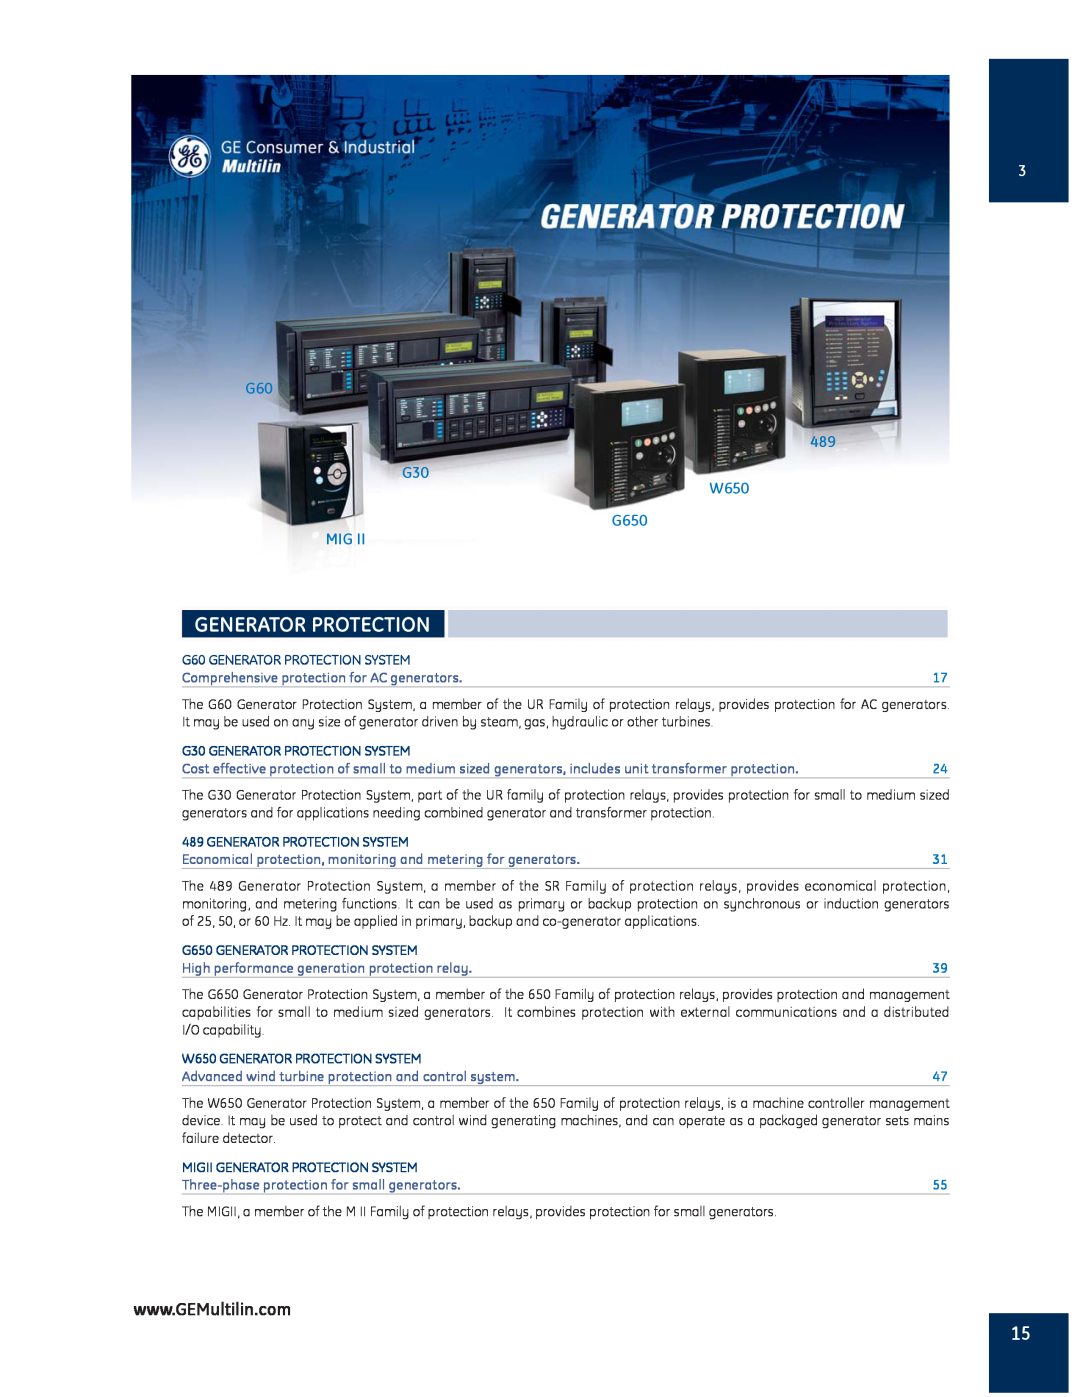 GE MIGII manual G60 489 G30 W650 G650 MIG, G60 GENERATOR PROTECTION SYSTEM, Generator Protection System 